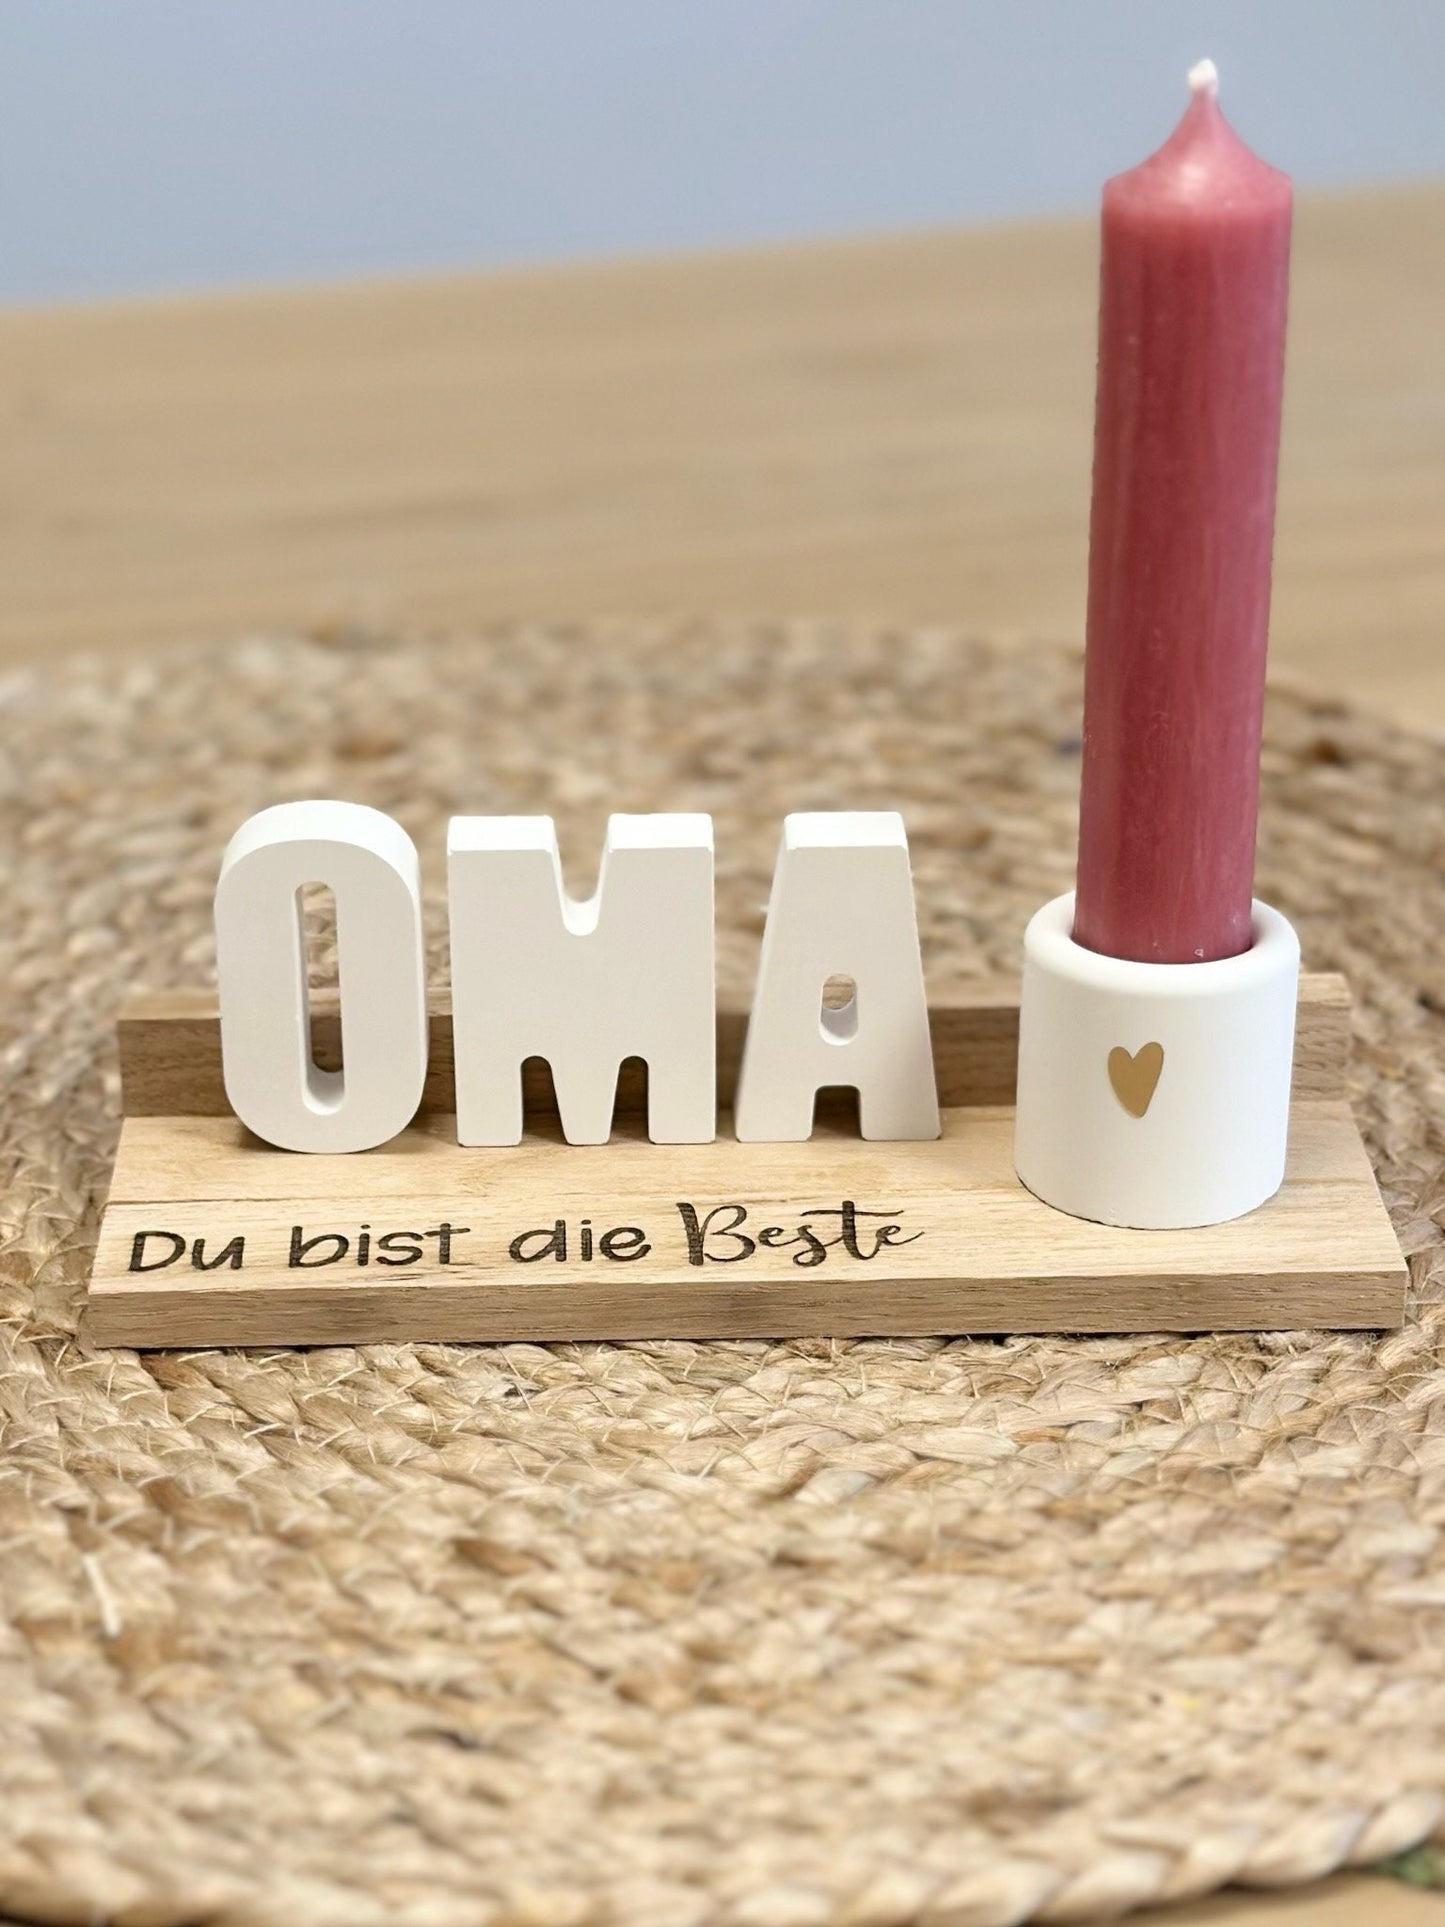 Herzensgeschenk für Oma - Kerzenhalter auf Holzpodest - Ideales Geschenk zum Muttertag, Geburtstag oder als Mitbringsel